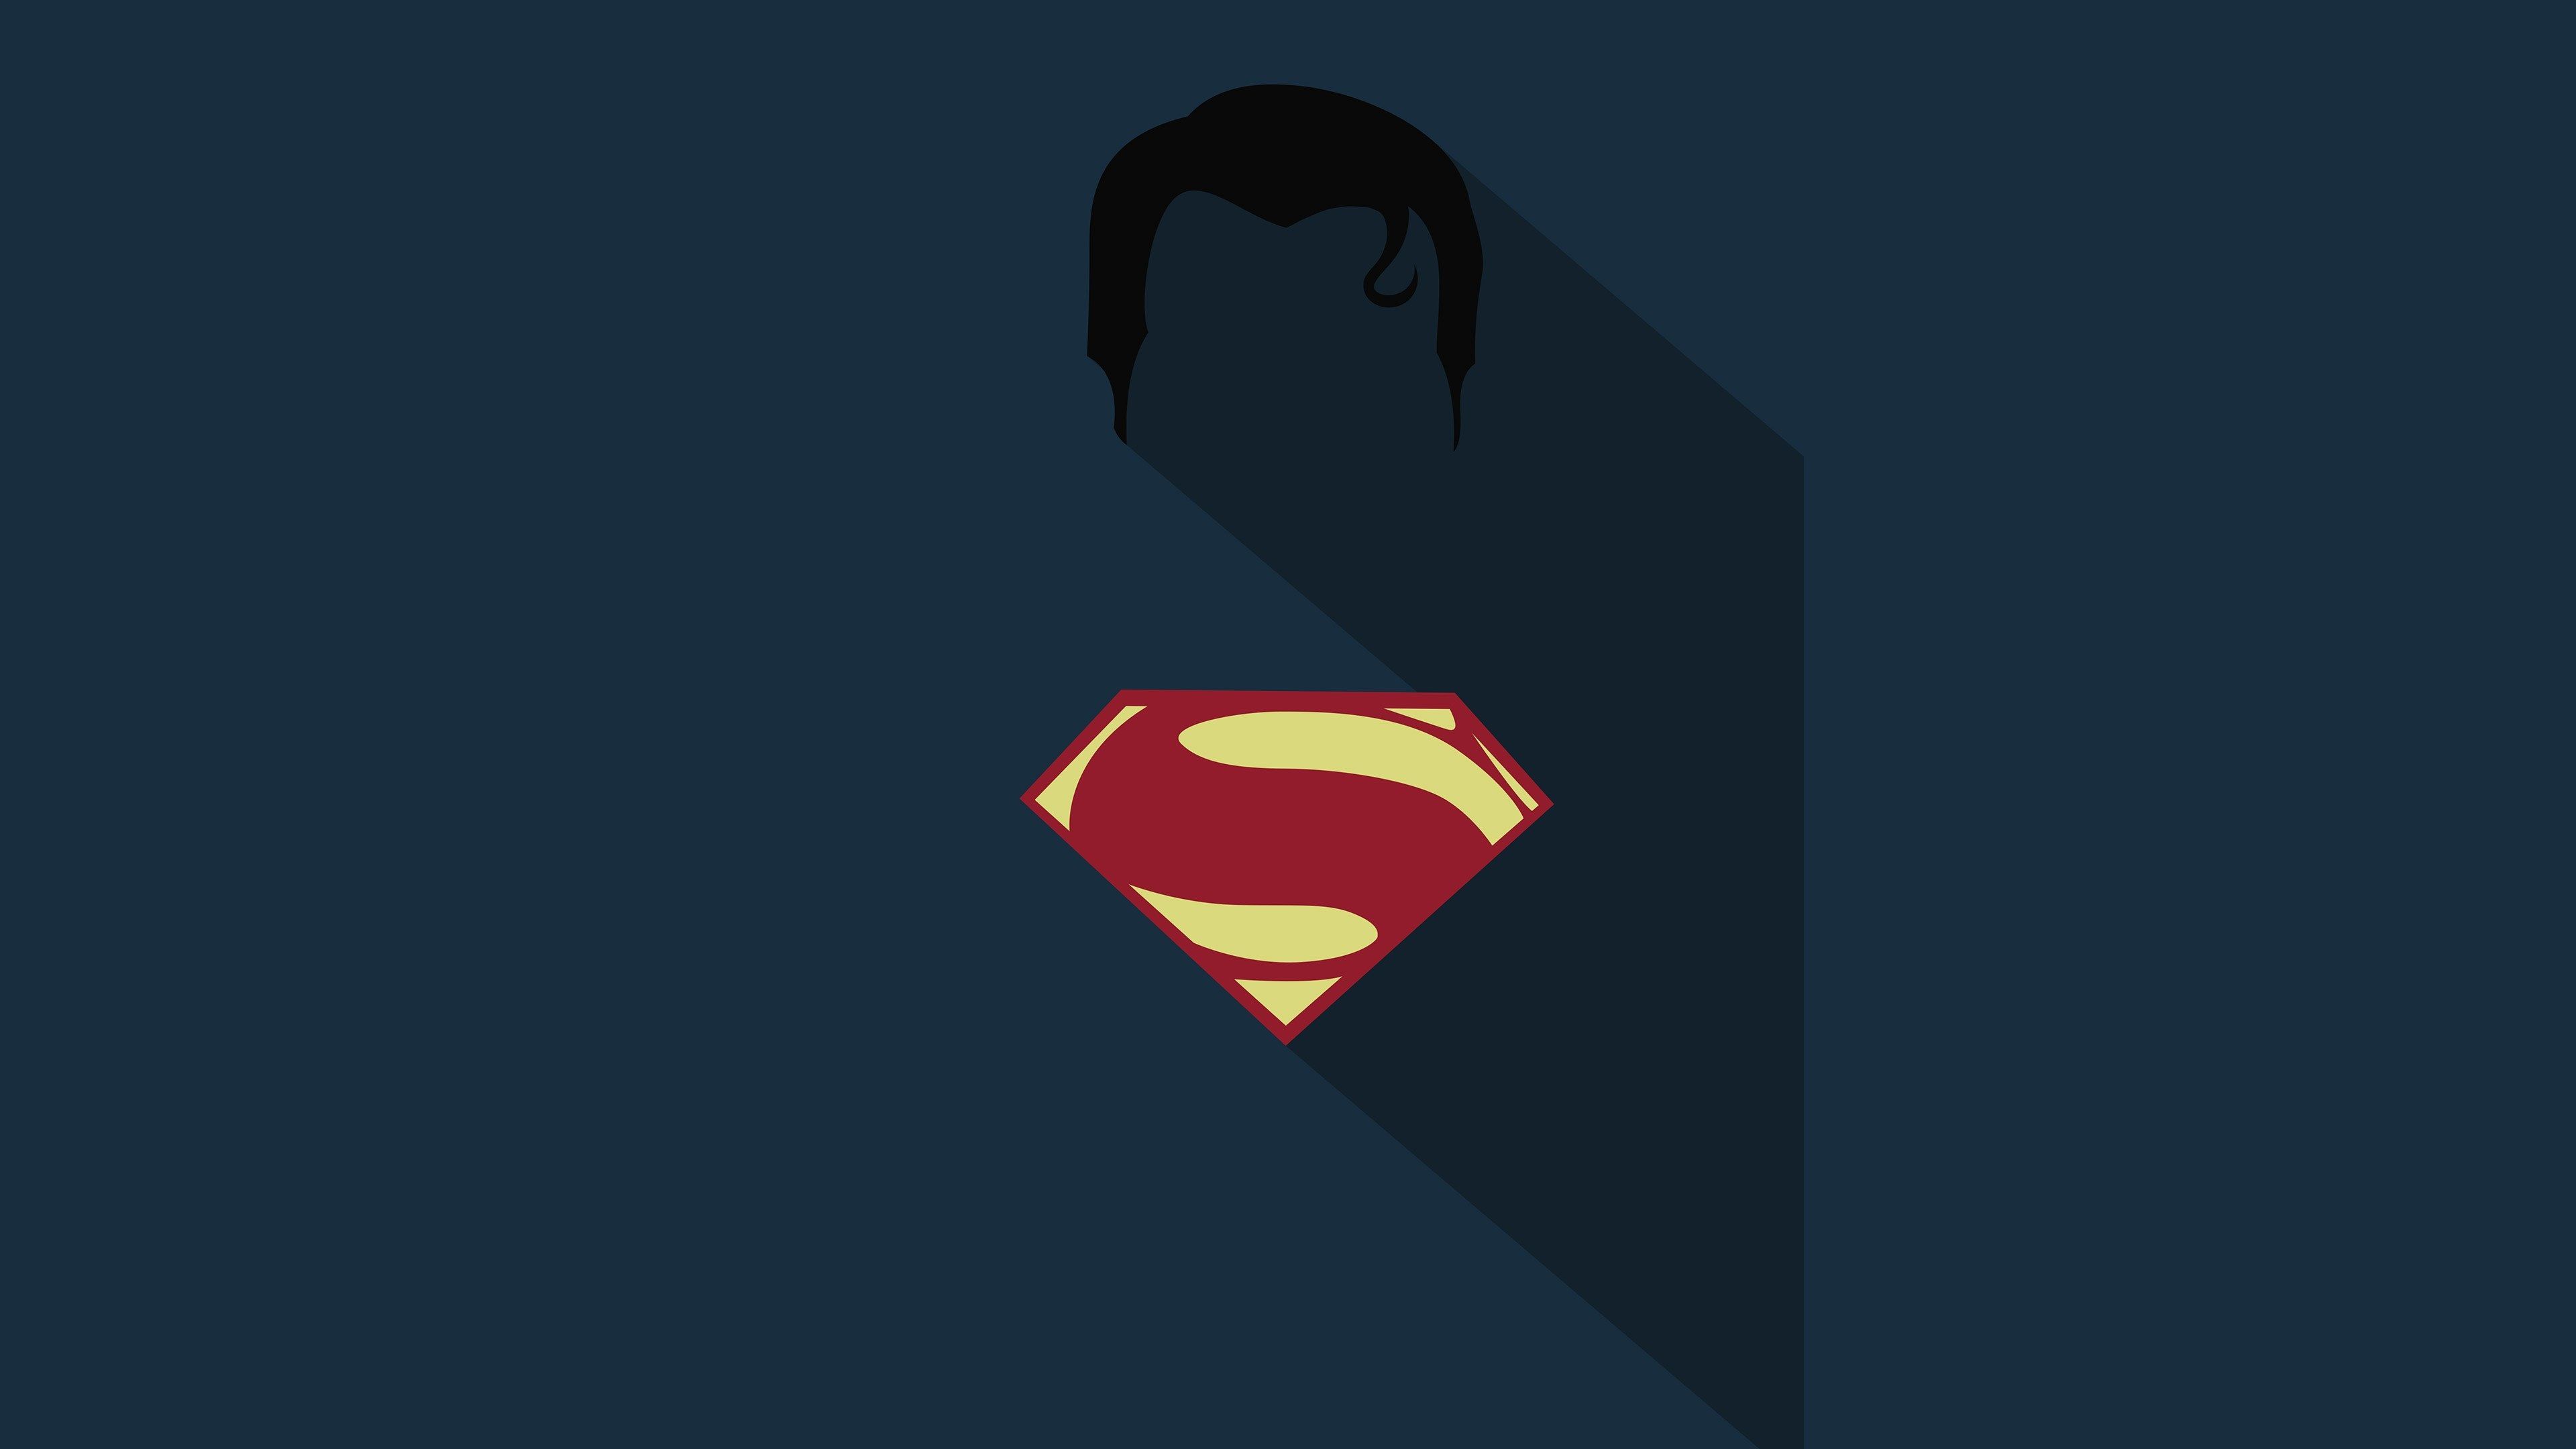 superman 4k background desktop. Superman wallpaper, Superhero wallpaper, Deadpool logo wallpaper